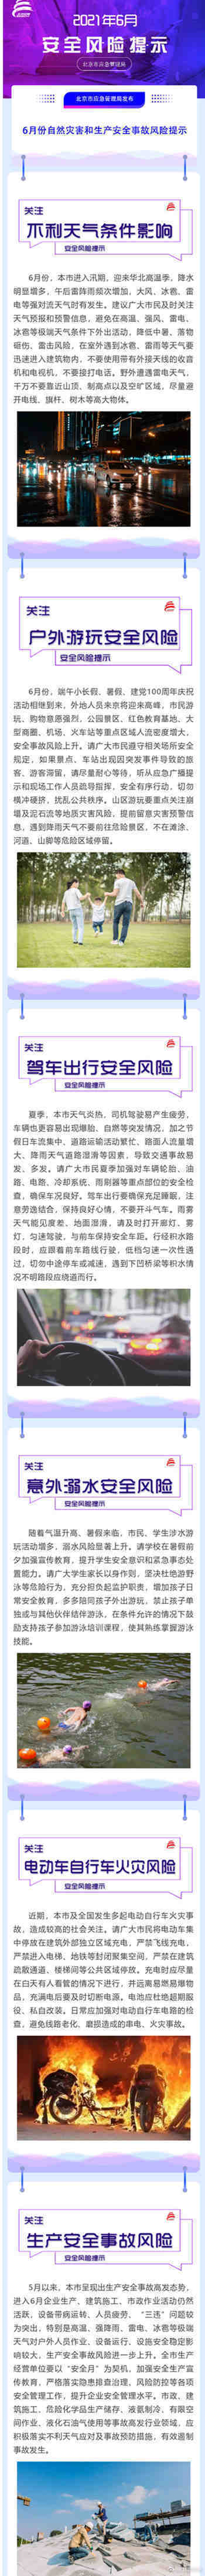 北京市应急管理局发布6月安全风险提示:降雨增多 出行关注天气